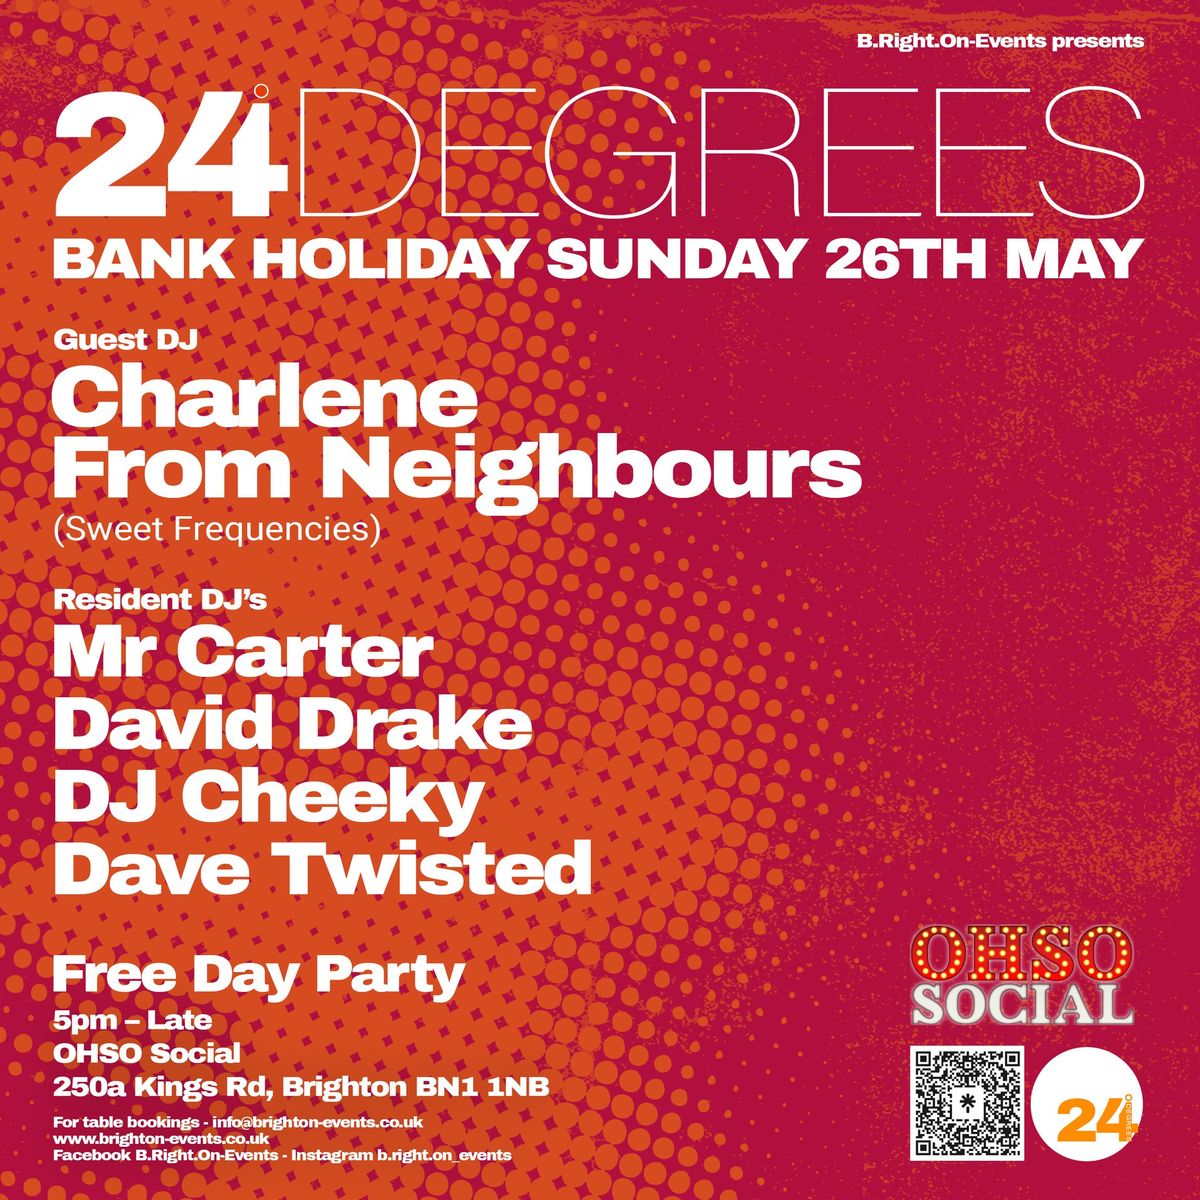 24 DEGREES - Bank Holiday Sunday 26th May @ OhSo Social Brighton